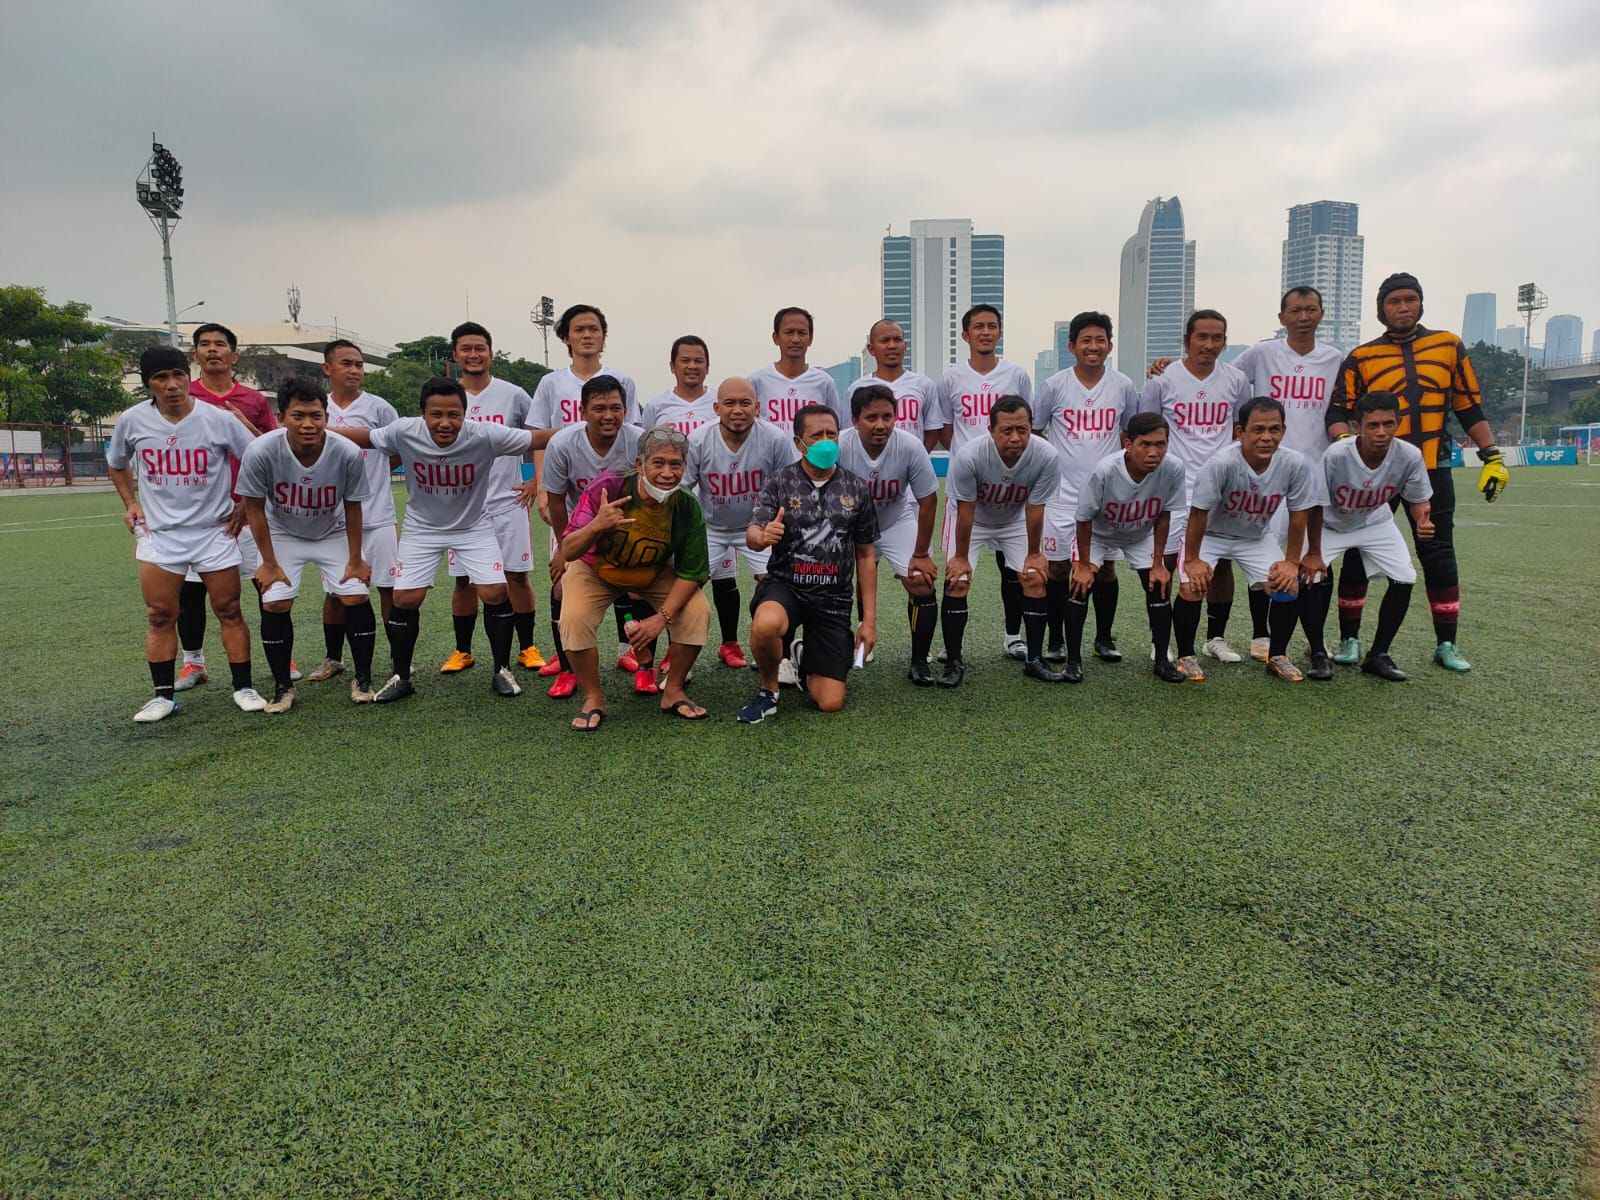 Laga Uji Coba : Tim Sepakbola Wartawan DKI Jakarta Menang Tipis 2-1 atas Tim IFF